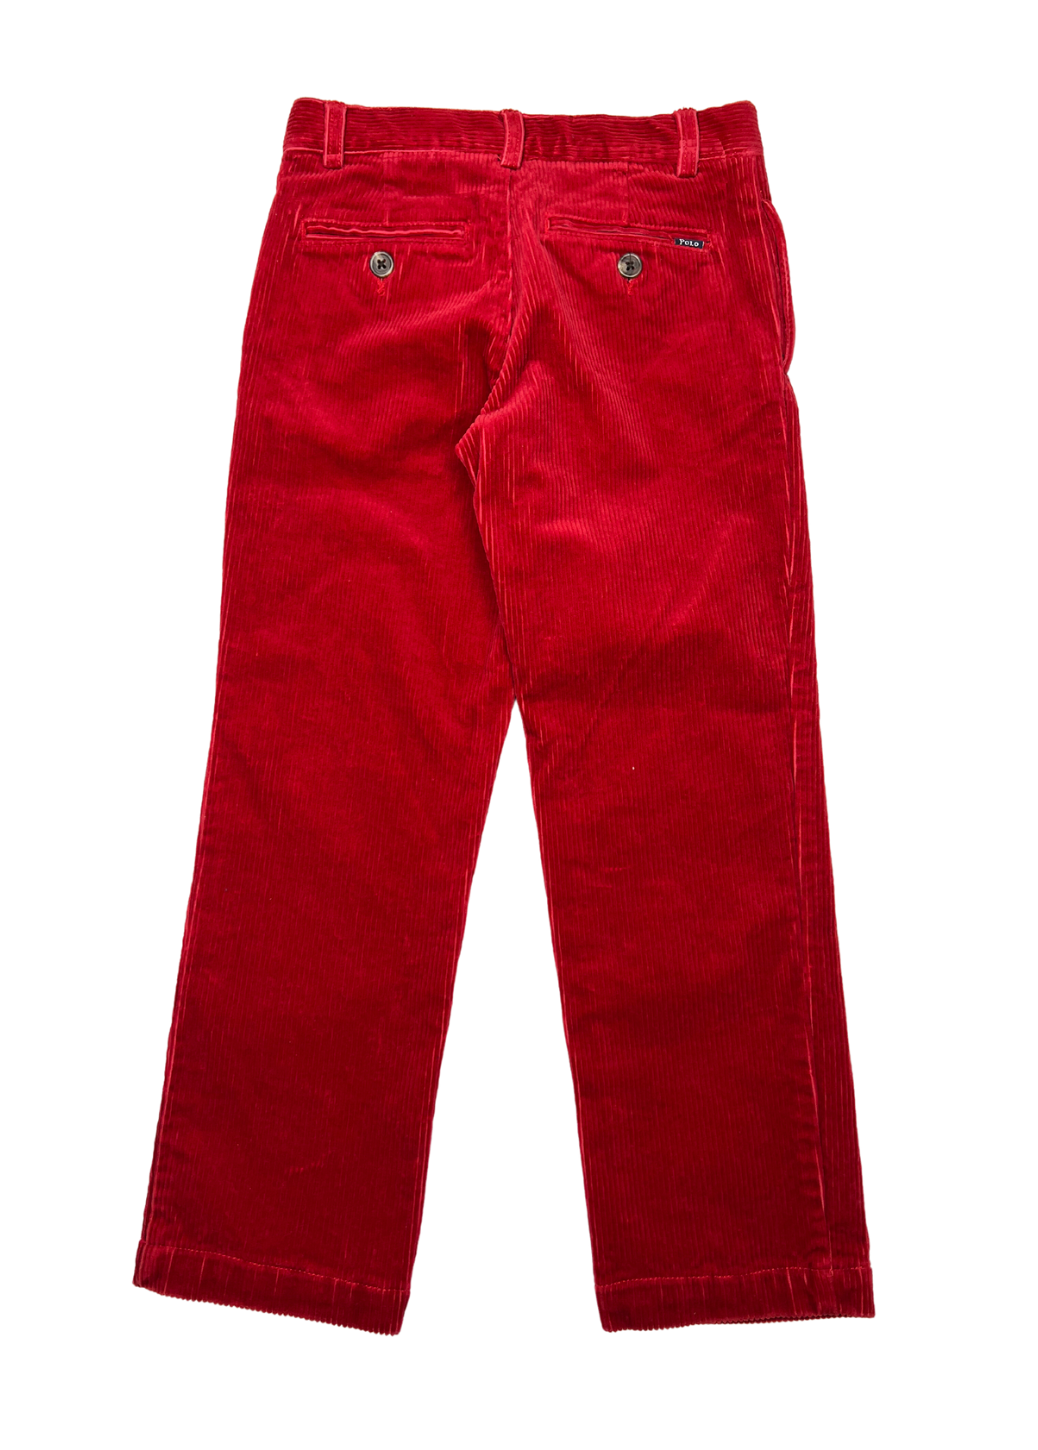 RALPH LAUREN - Pantalon en velours rouge - 5 ans